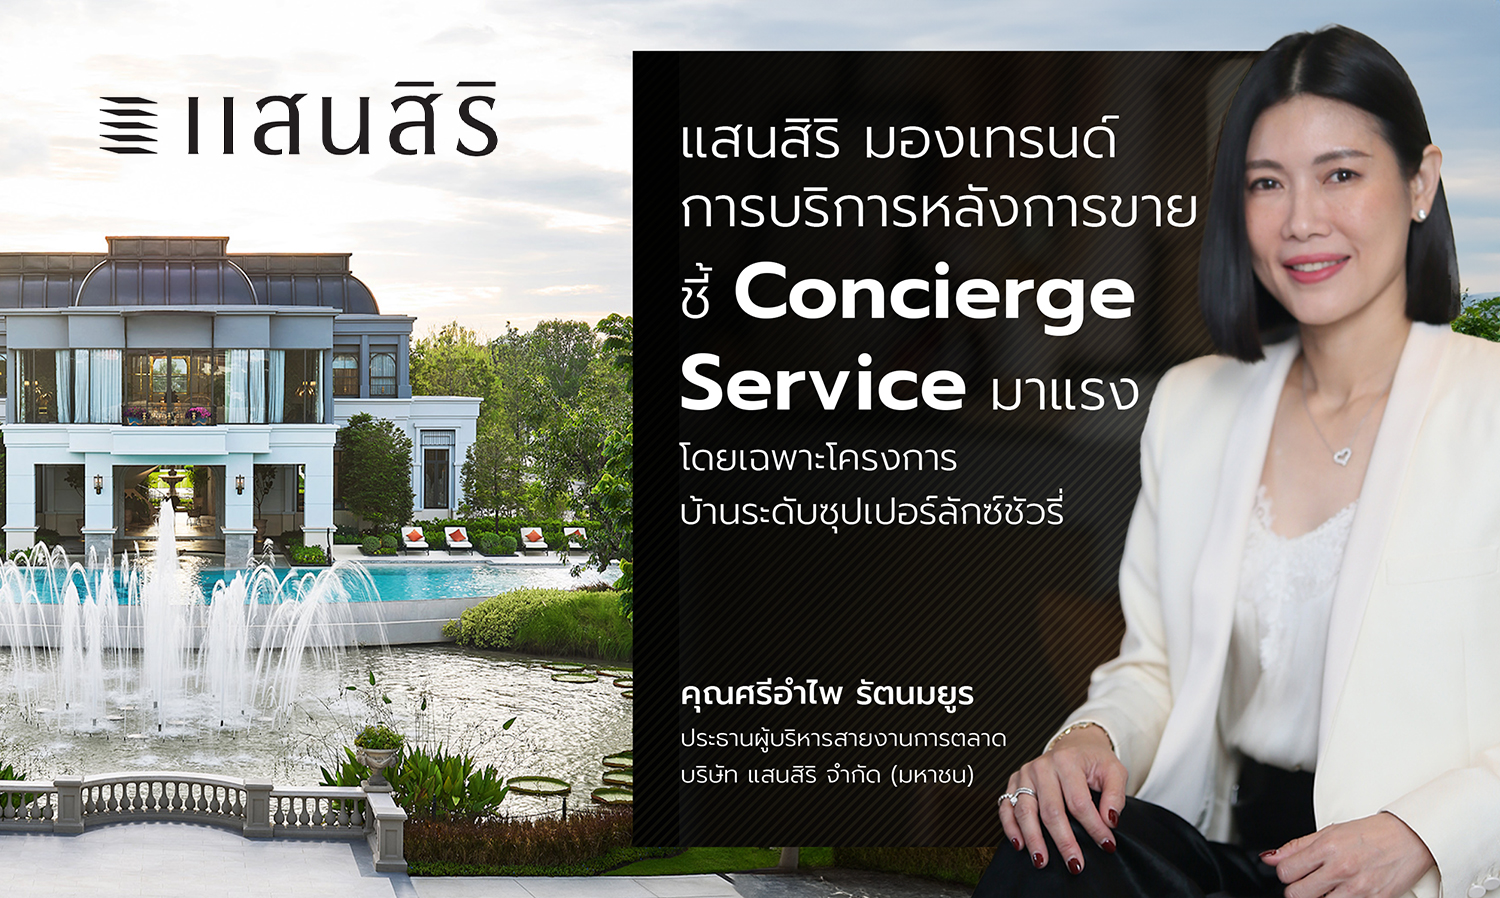 แสนสิริ มองเทรนด์การบริการหลังการขาย ชี้ Concierge Service มาแรง  โดยเฉพาะโครงการบ้านระดับซุปเปอร์ลักซ์ชัวรี่